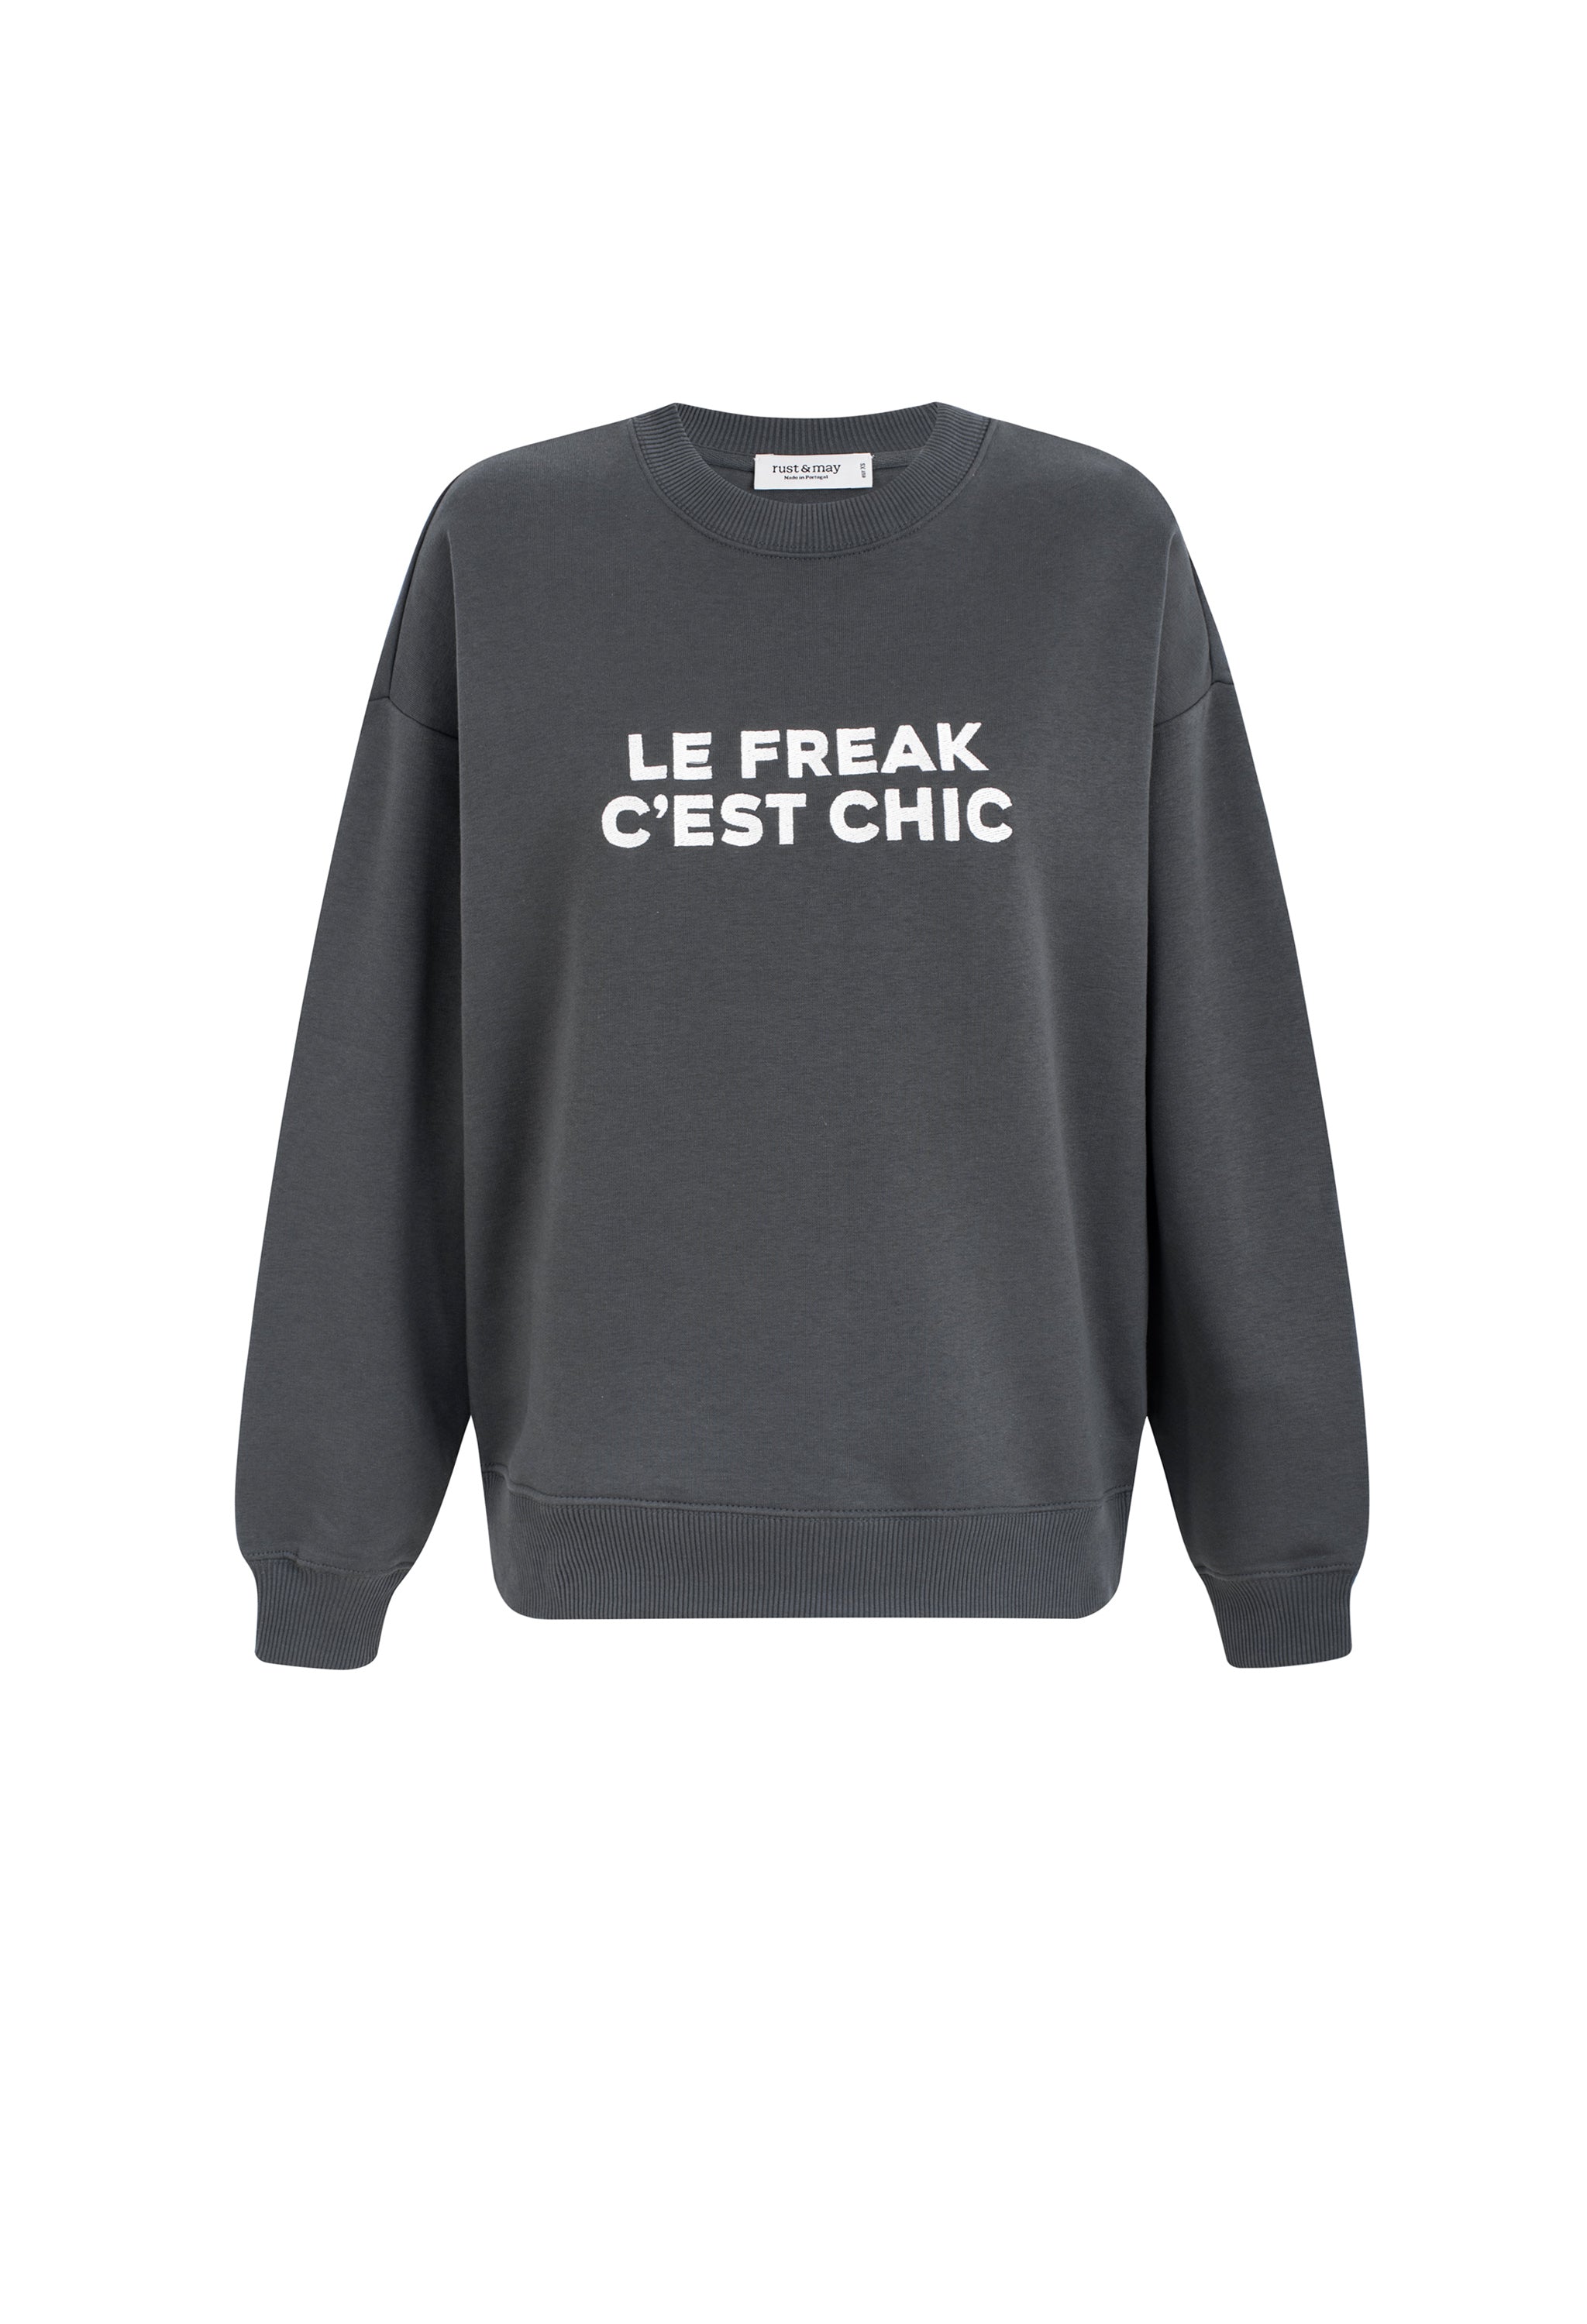 Le Freak Sweatshirt (Cinza Escuro)